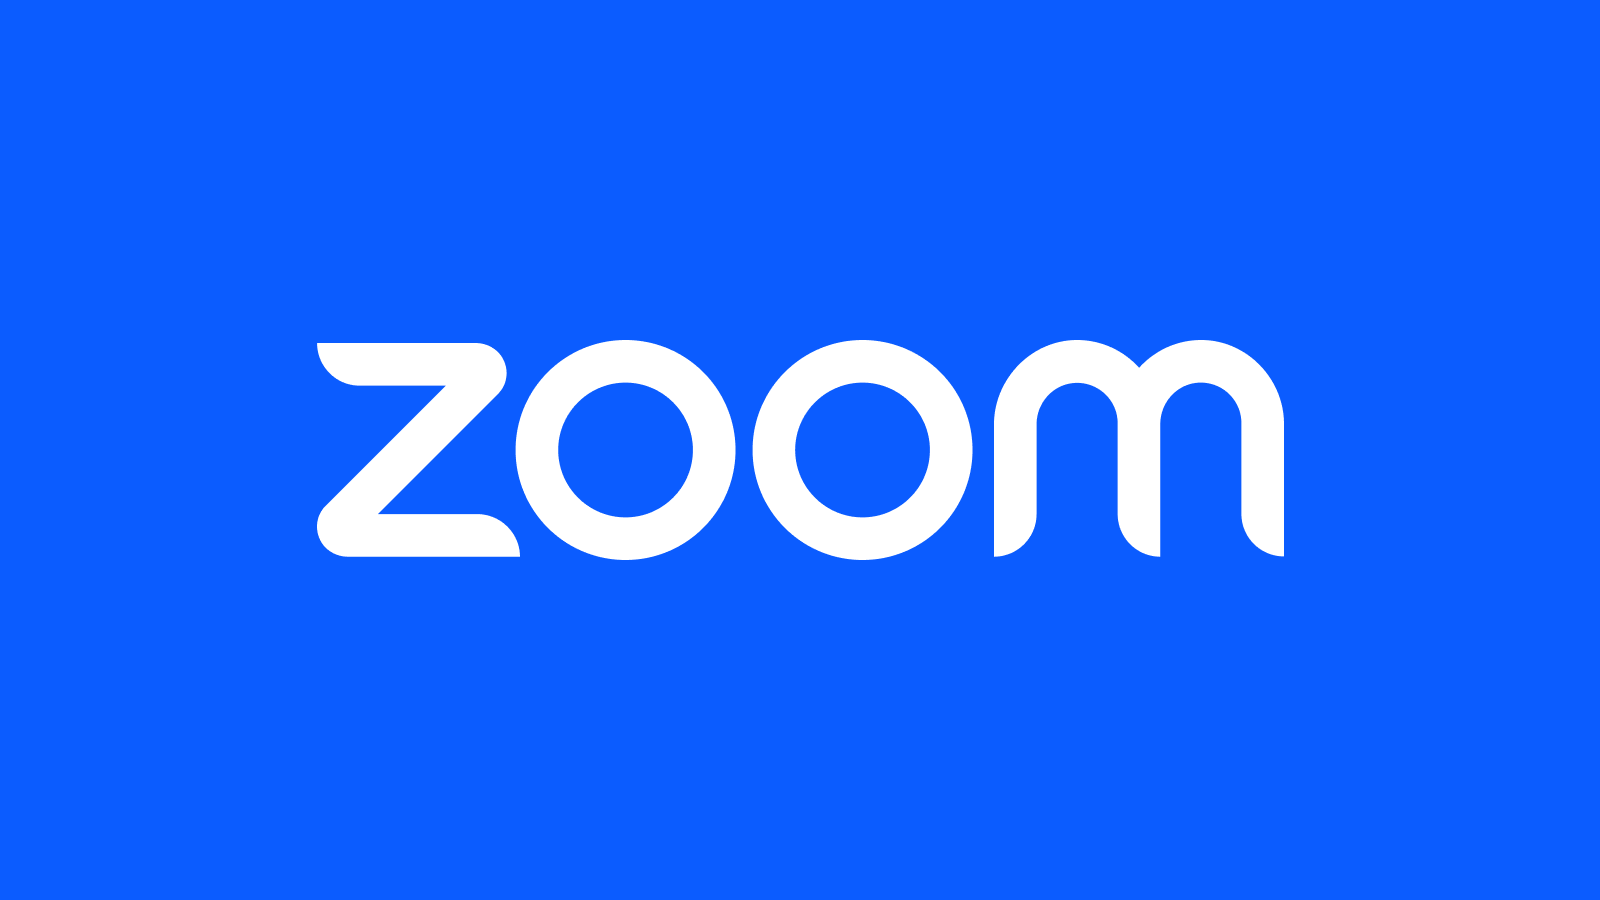 Zoom ponownie zmienił swoje warunki świadczenia usług, usuwając z nich wzmiankę o sztucznej inteligencji